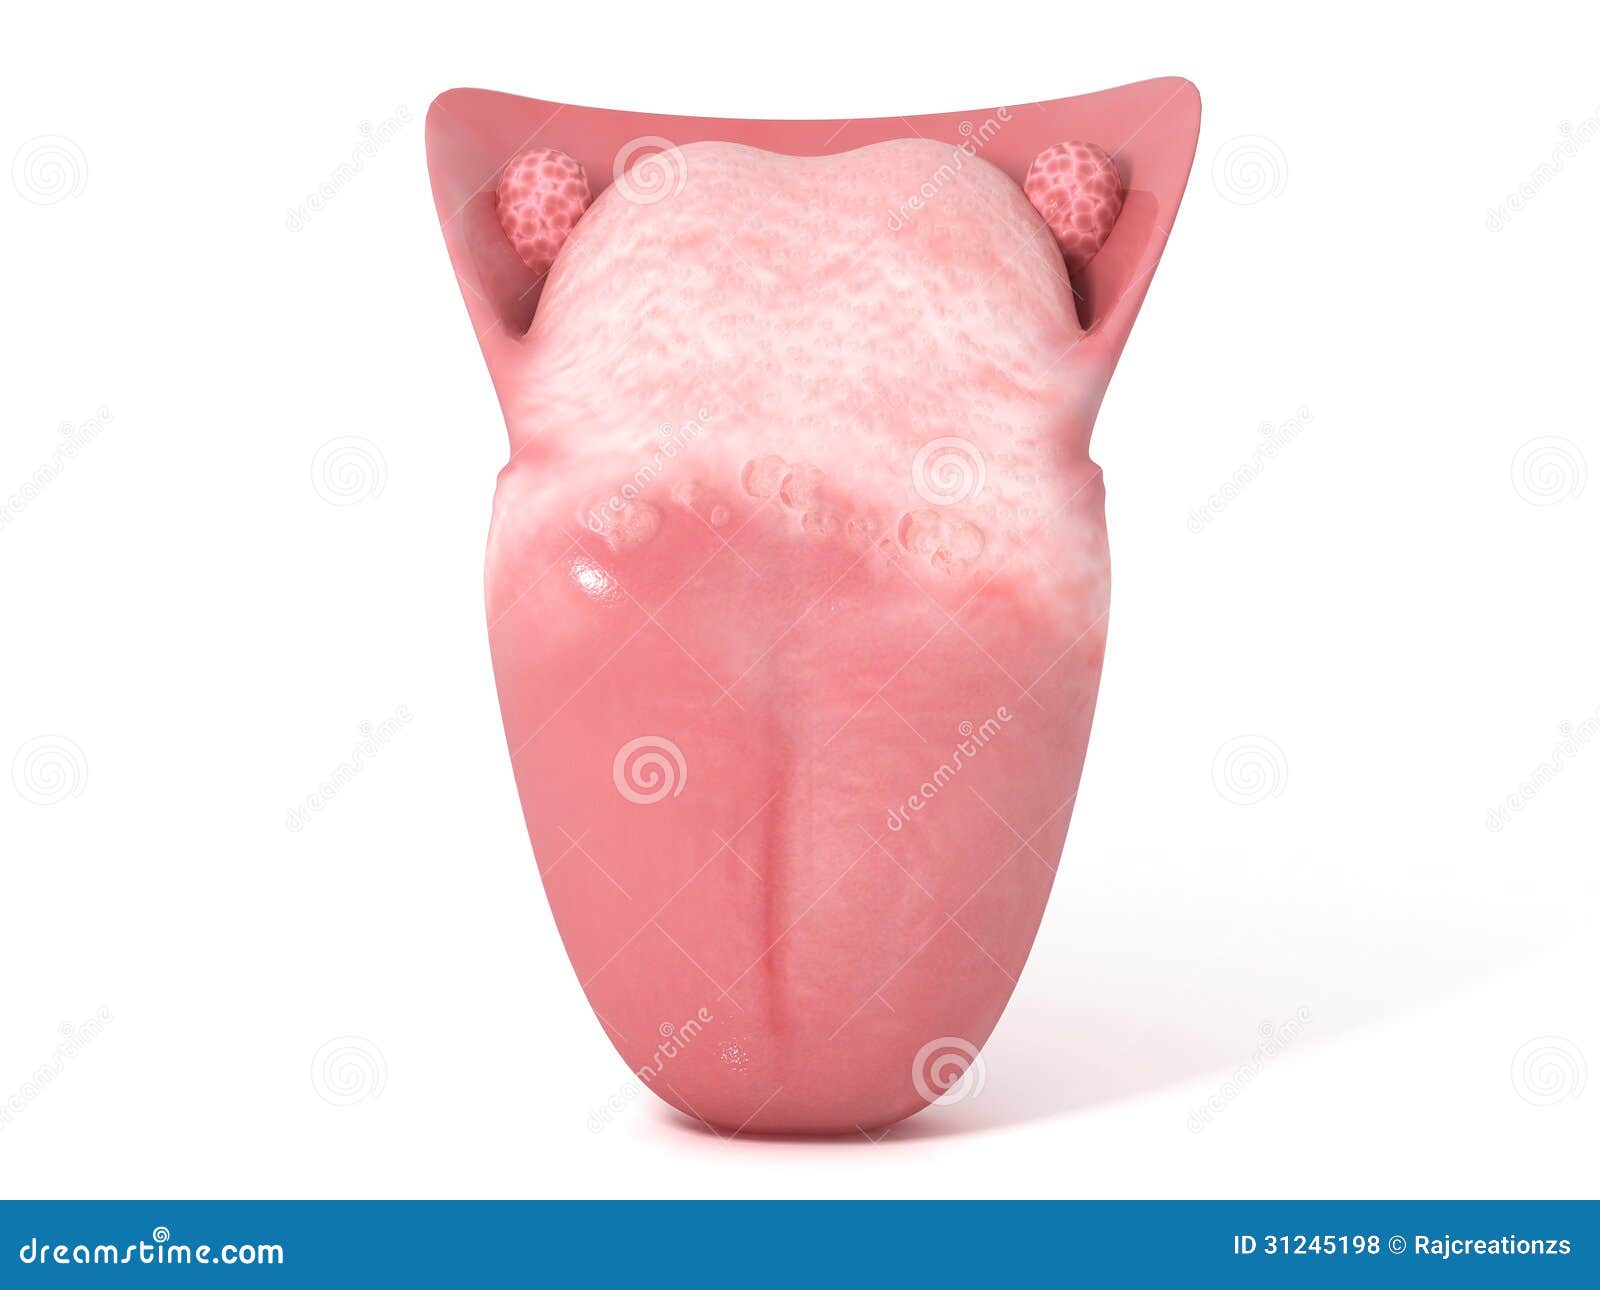 Human Tongue Royalty Free Stock Photos - Image: 31245198